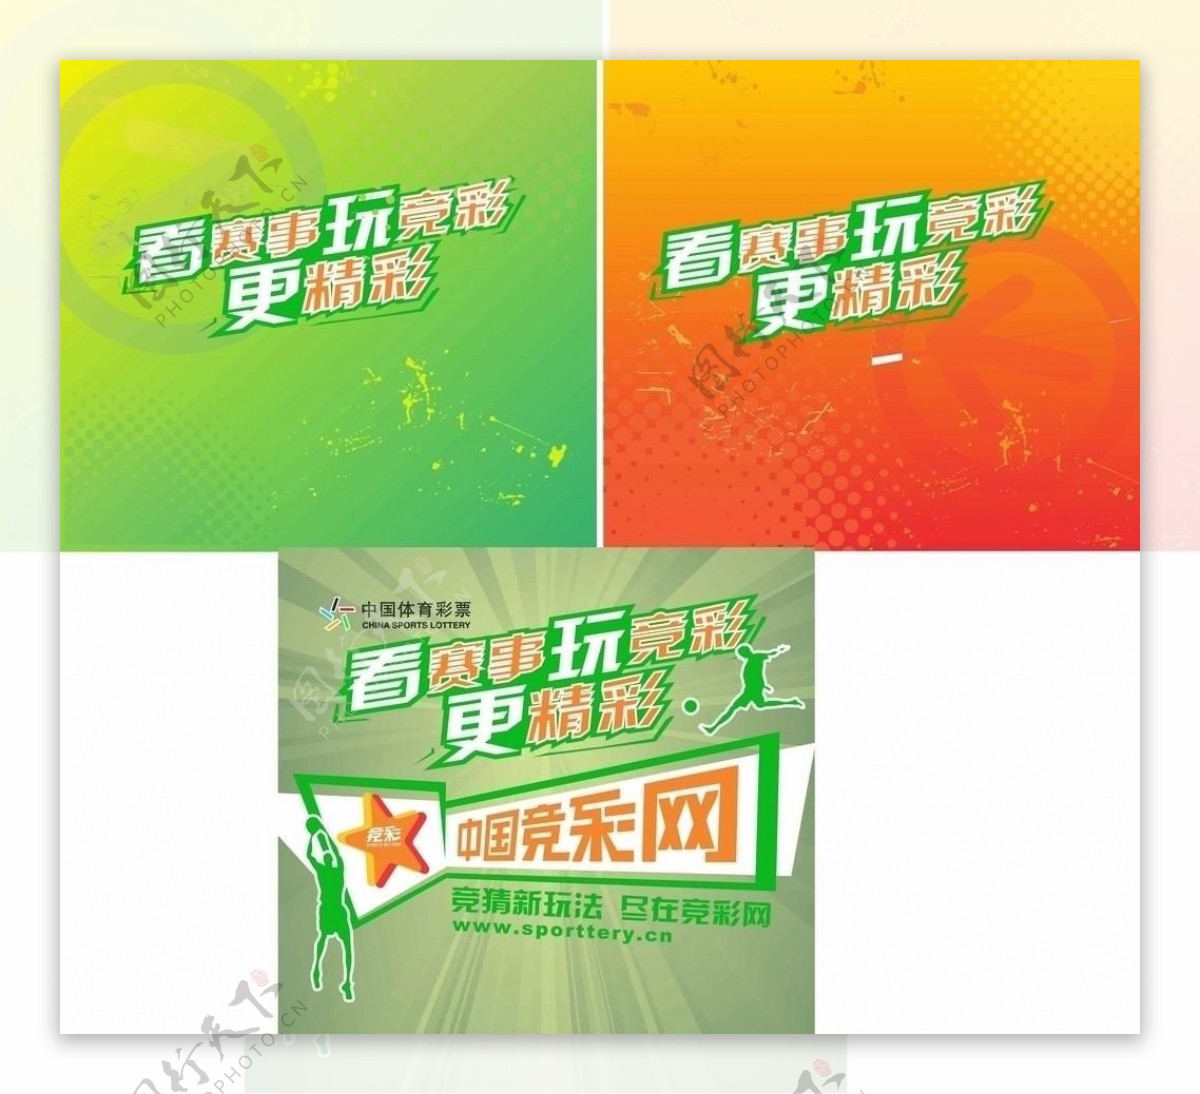 中国体育彩票竞彩海报图片